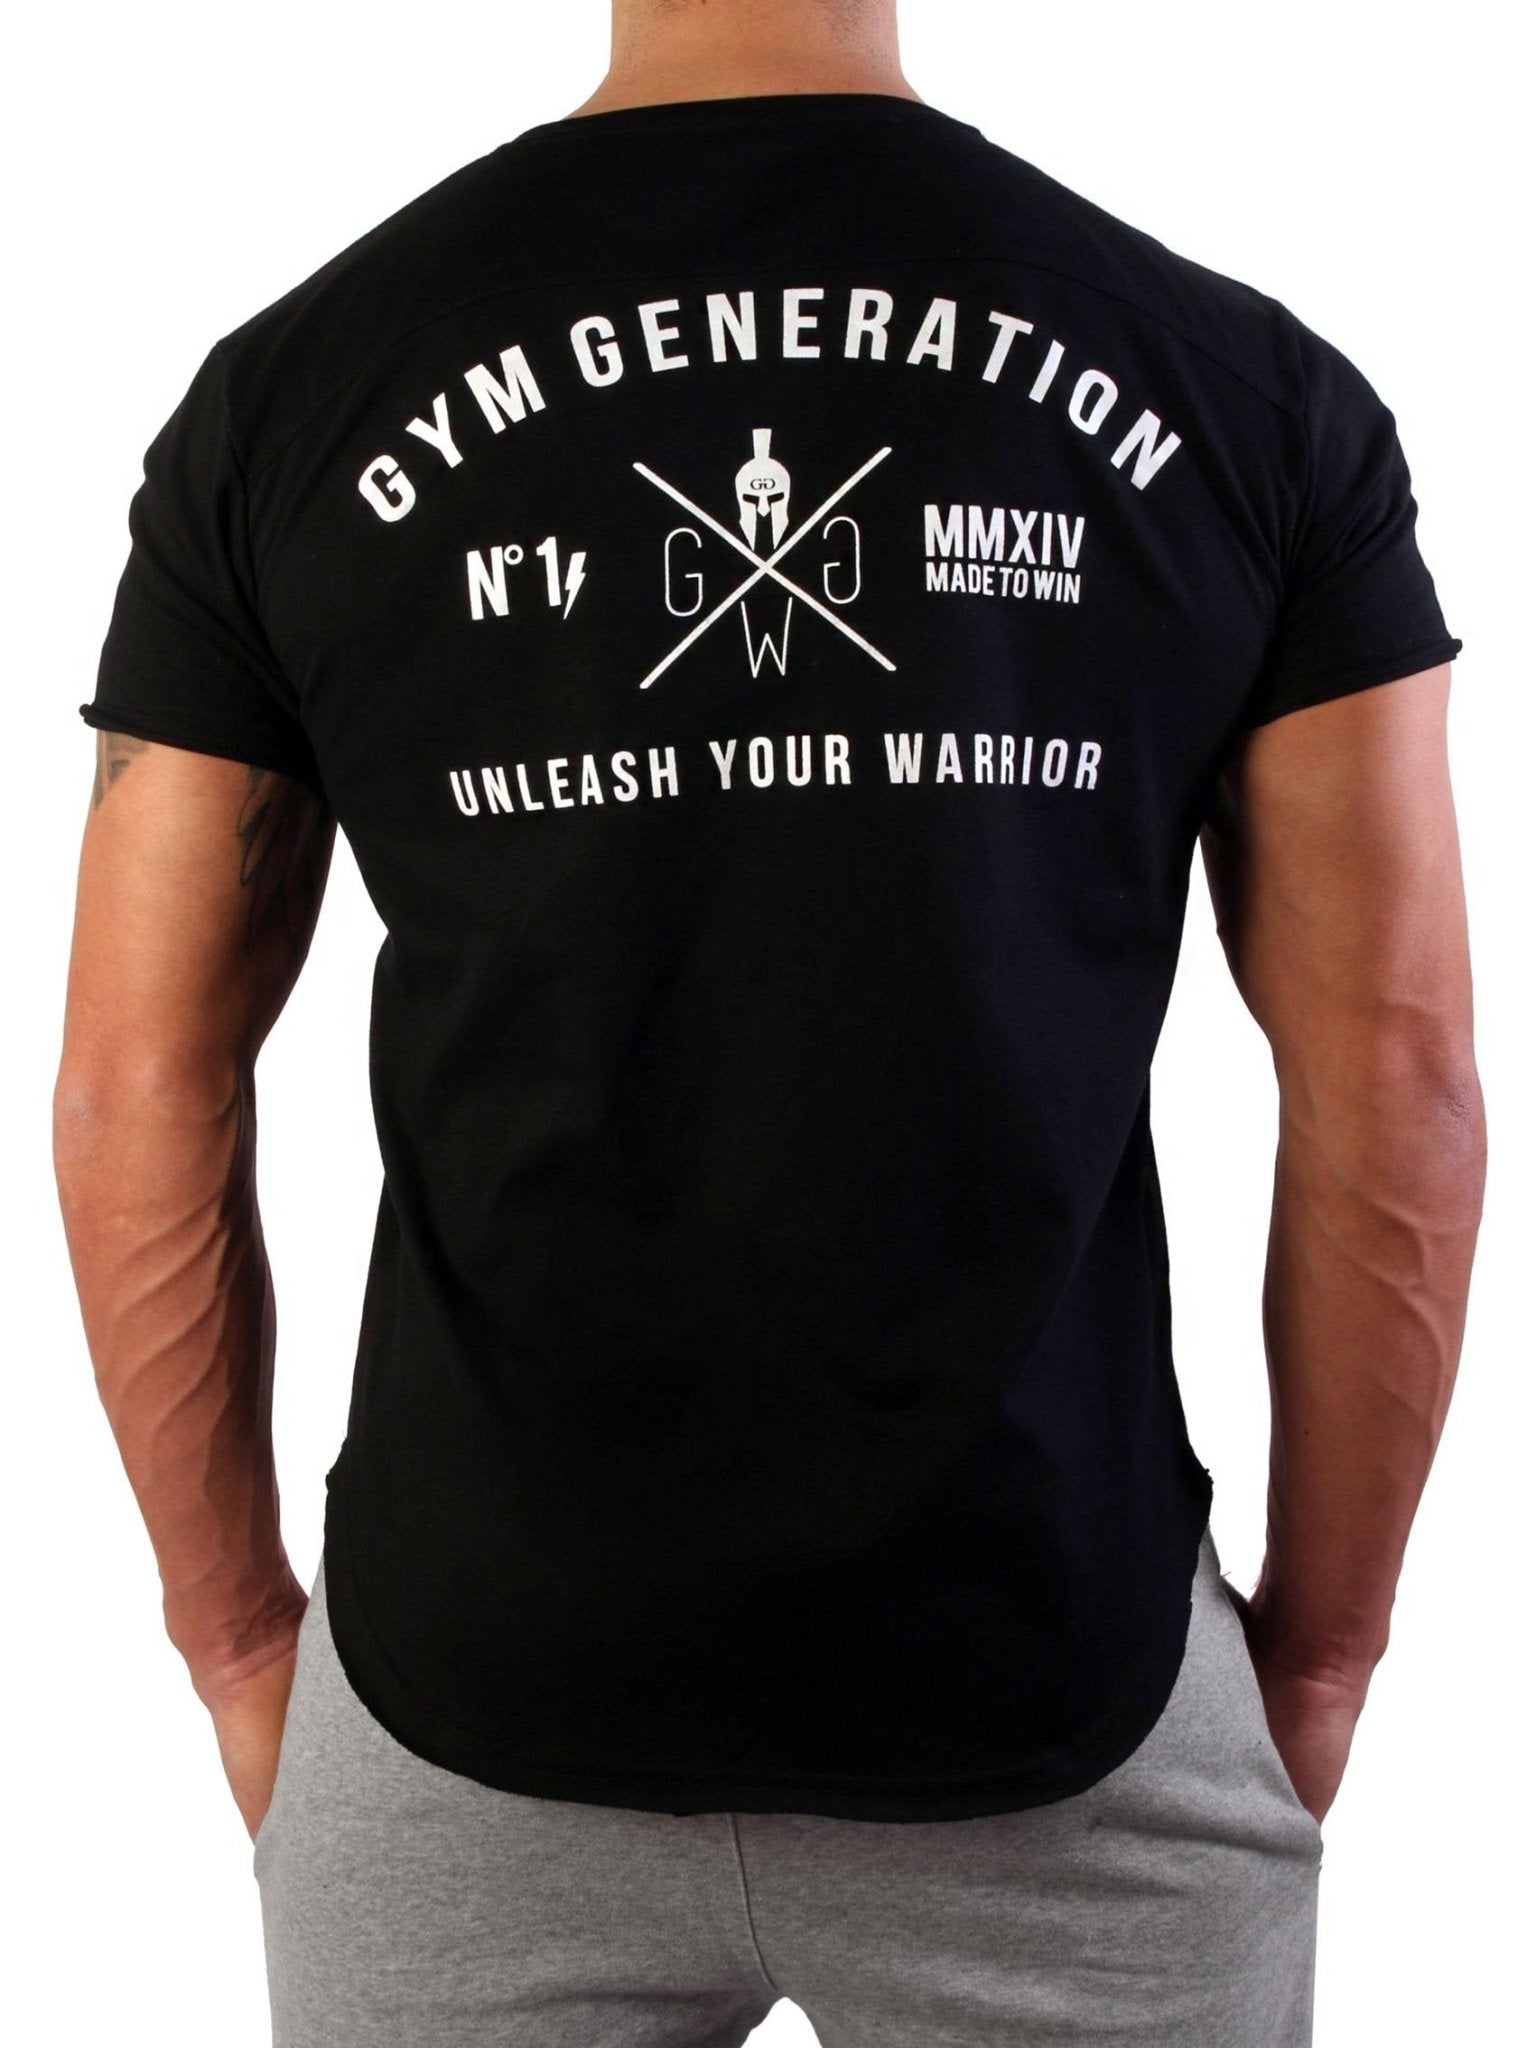 Bequemes und figurbetontes schwarzes Gym Generation T-Shirt, ideal für Fitnessstudio und Alltag.